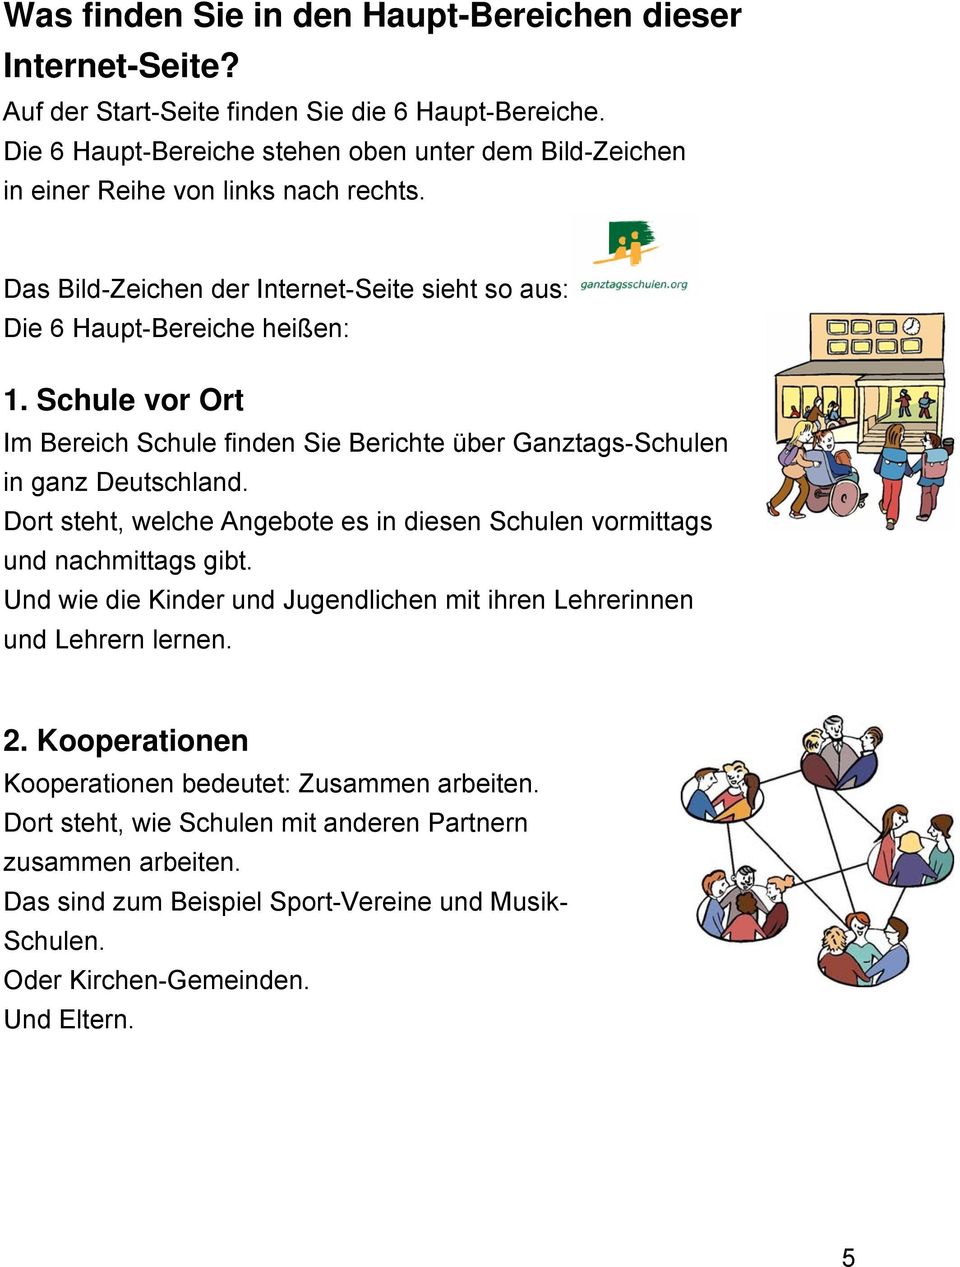 Schule vor Ort Im Bereich Schule finden Sie Berichte über Ganztags-Schulen in ganz Deutschland. Dort steht, welche Angebote es in diesen Schulen vormittags und nachmittags gibt.